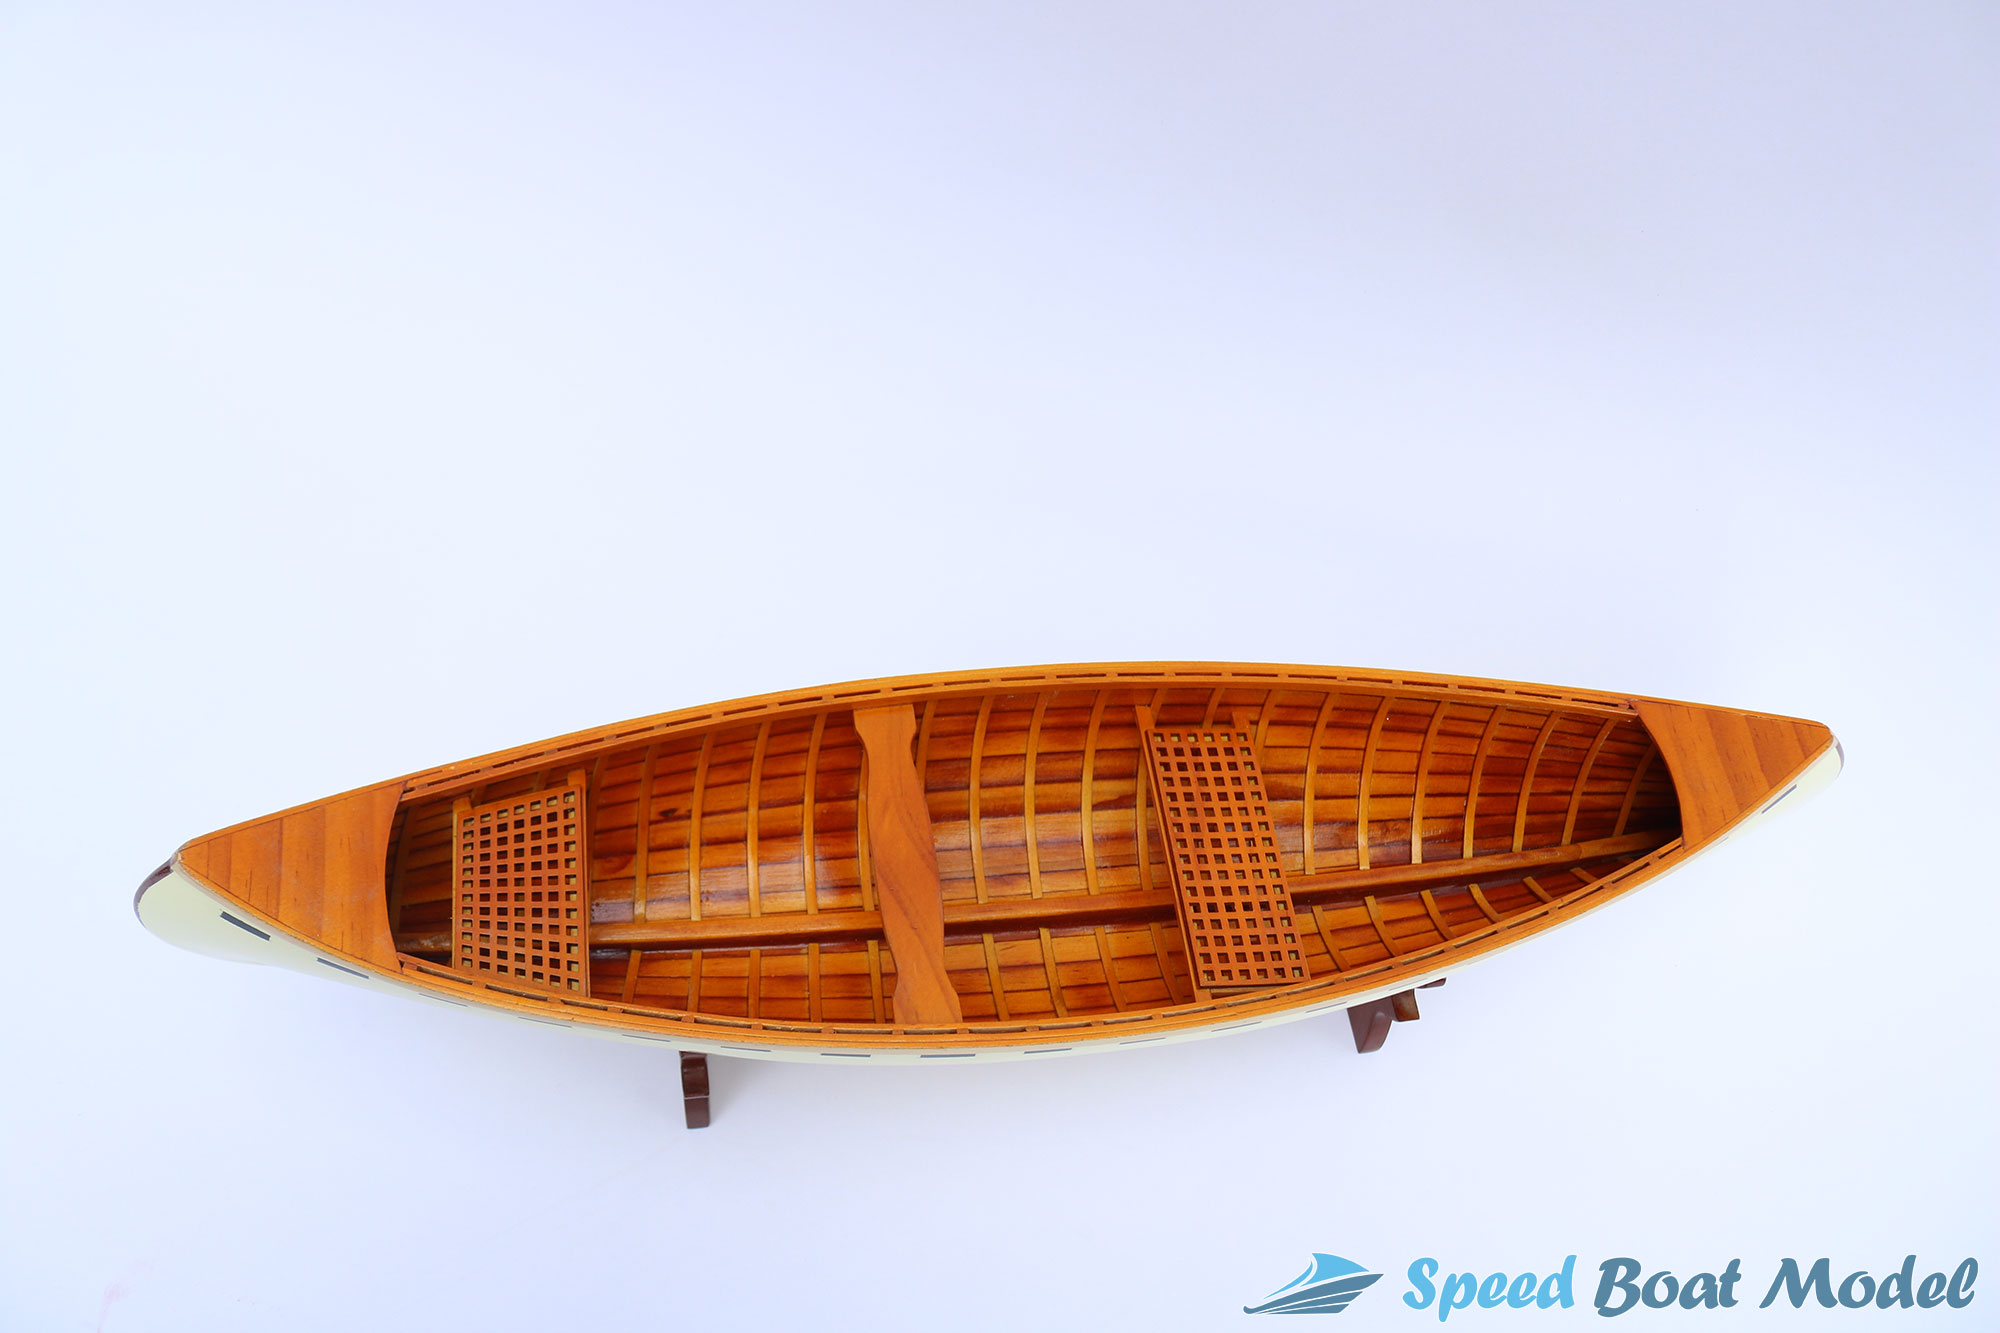 Caramel Peterborough Traditional Boat Model 24